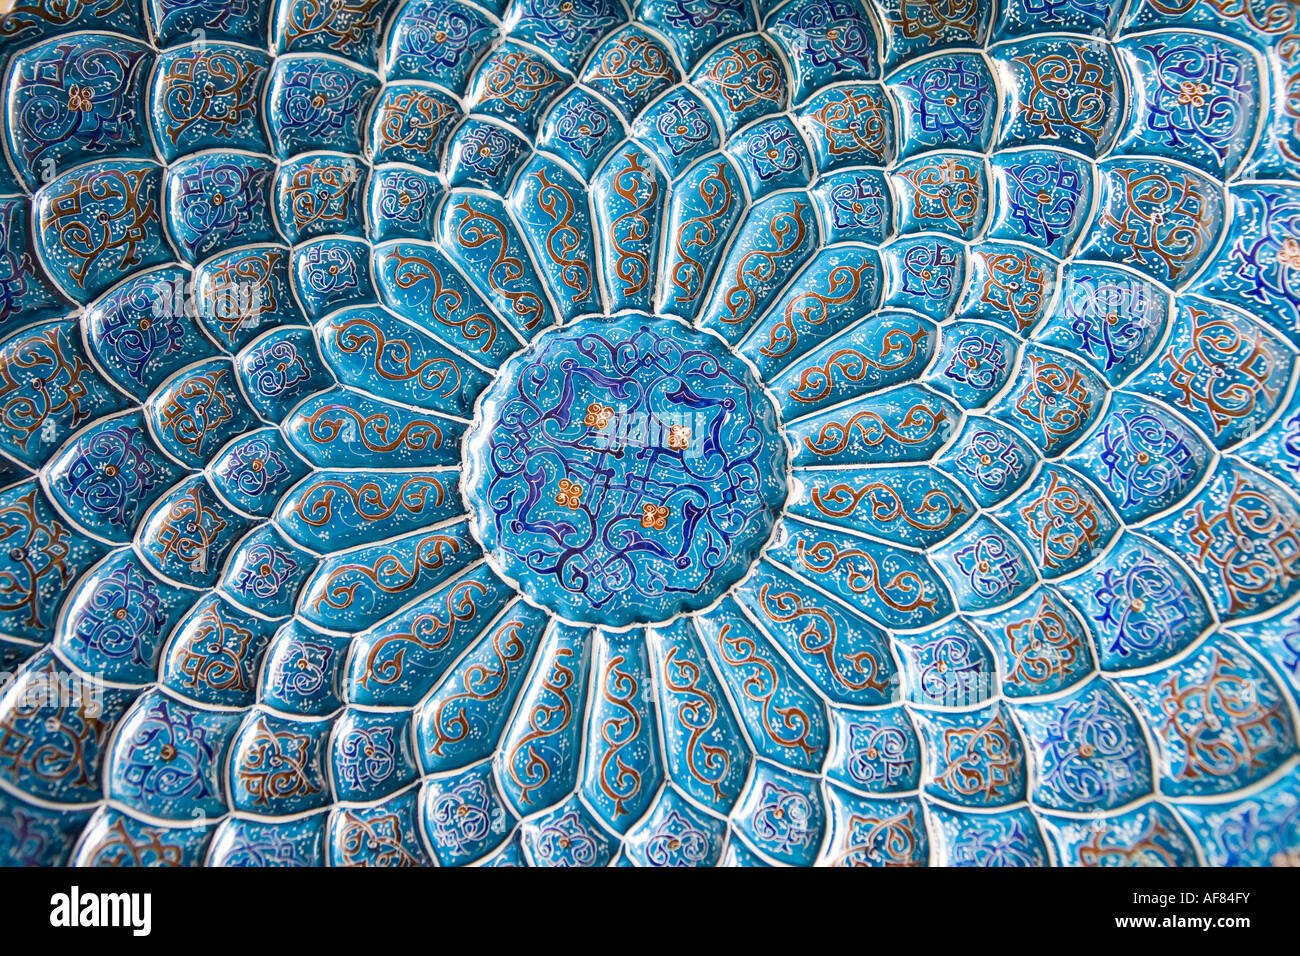 Plaque de cuivre émaillé de Pattern, le Bazar Royal, Ispahan, Iran Banque D'Images